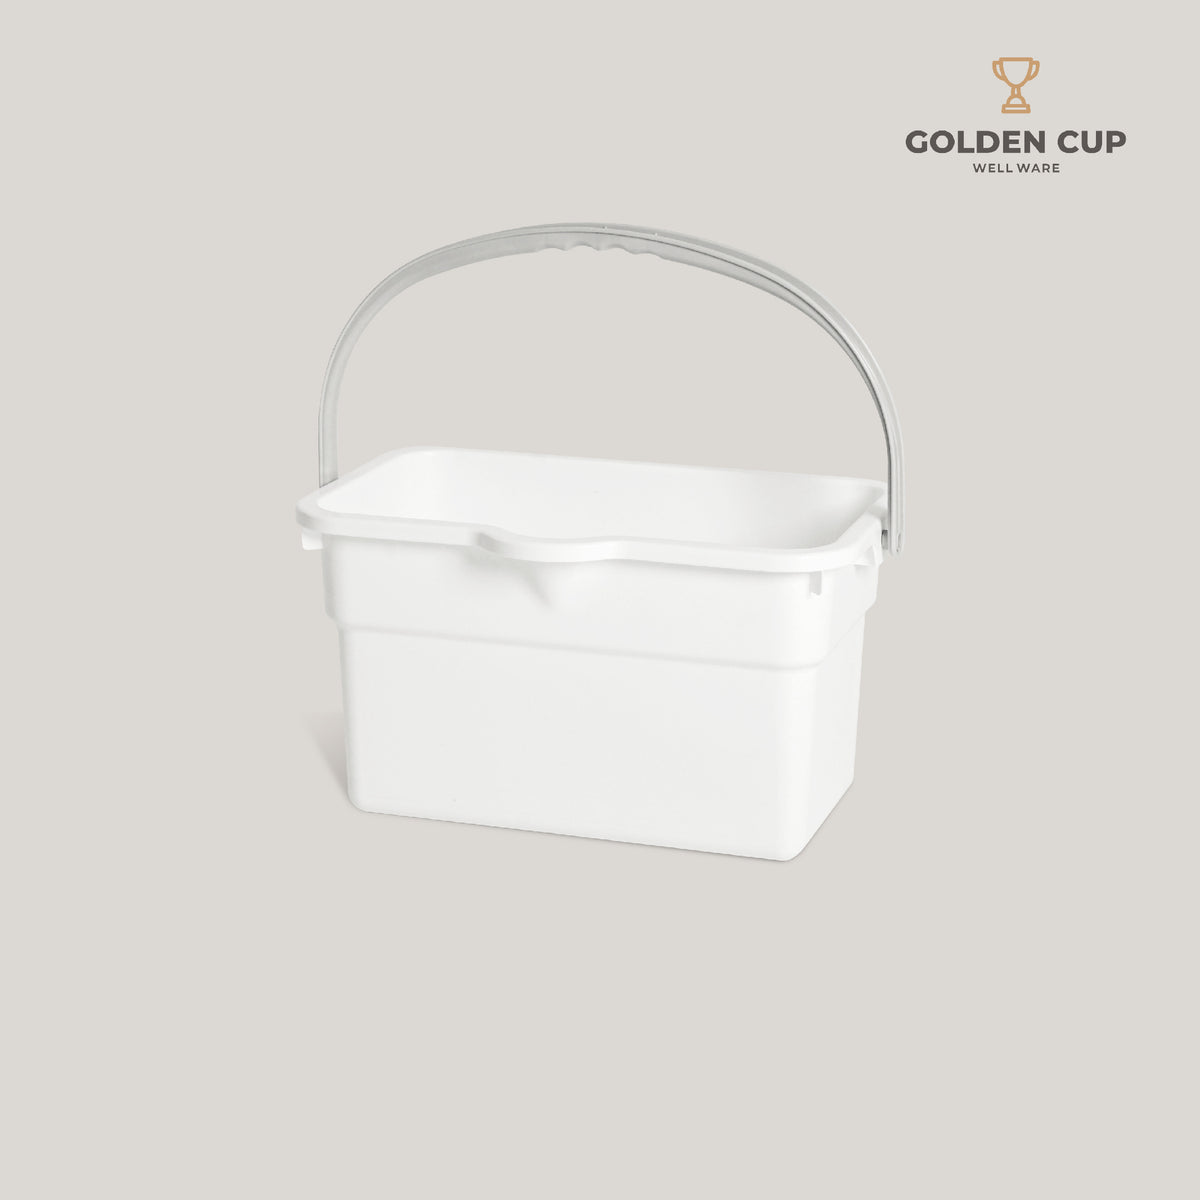 GOLDEN CUP ถังอเนกประสงค์ ถังใส่น้ำ ถังใส่ของ AG399 ความจุ 14 ลิตร สีขาว